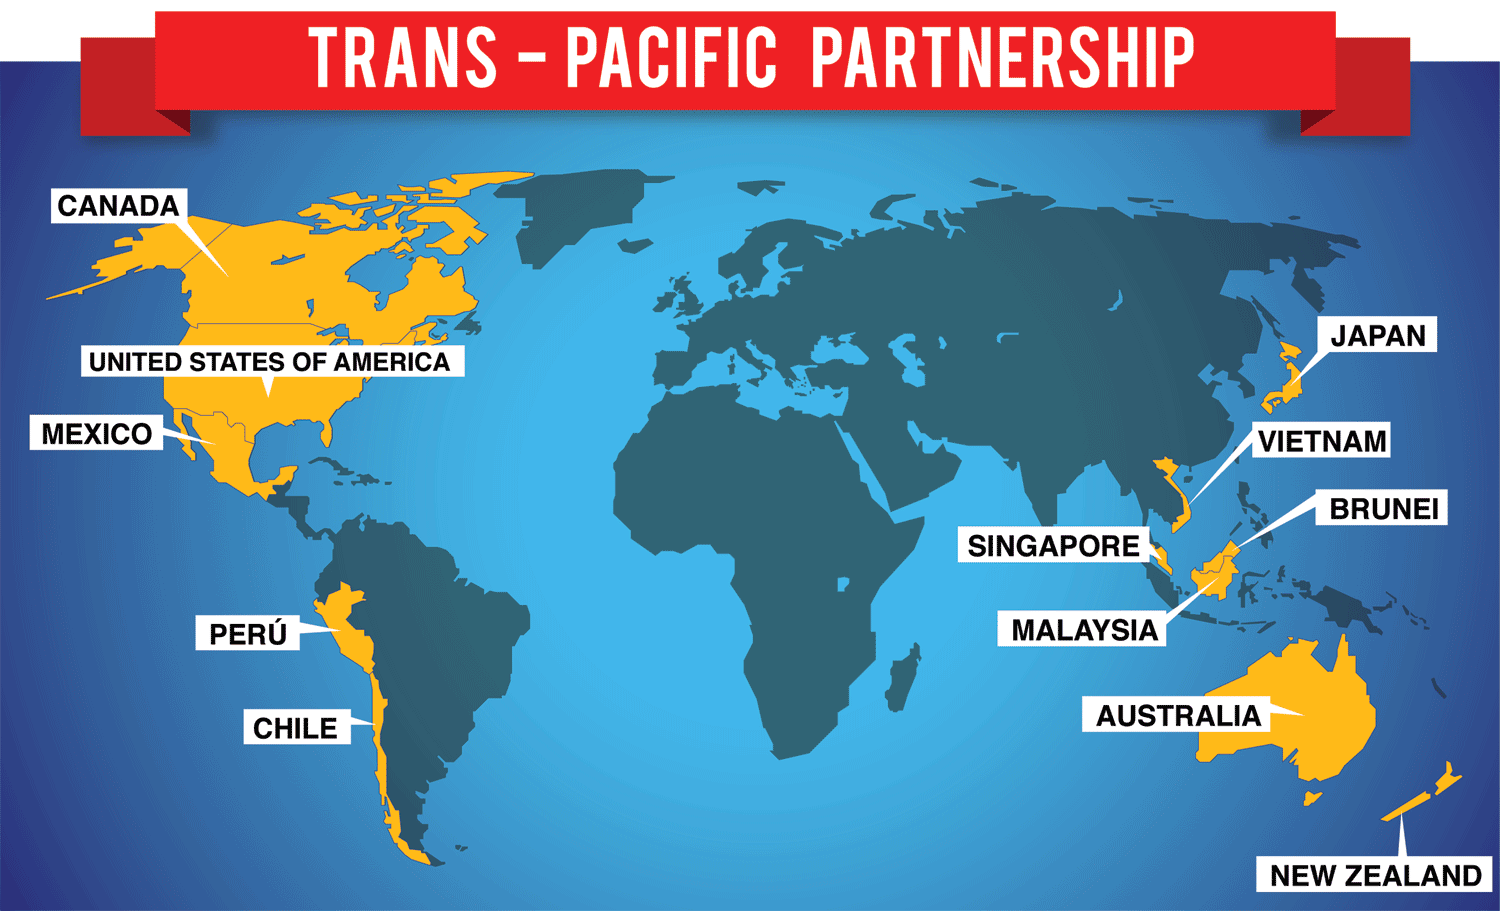 Hôm nay, 4/2, Hiệp định Đối tác Kinh tế Chiến lược xuyên Thái Bình Dương (TPP) chính thức được ký kết. 